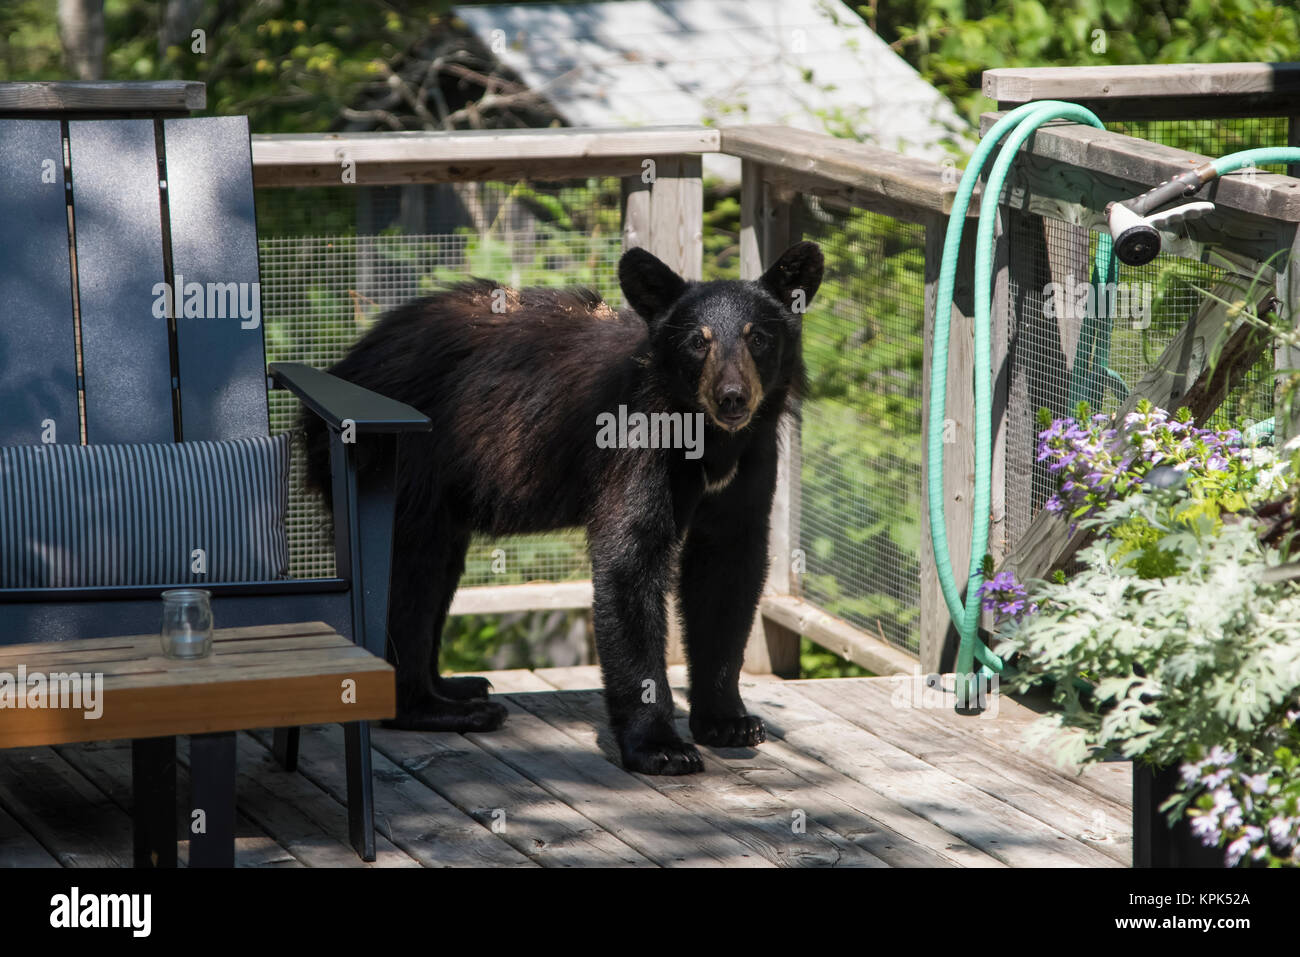 Un ours noir (Ursus americanus) cub se dresse sur un pont résidentiel regardant la caméra ; le lac des Bois, Ontario, Canada Banque D'Images